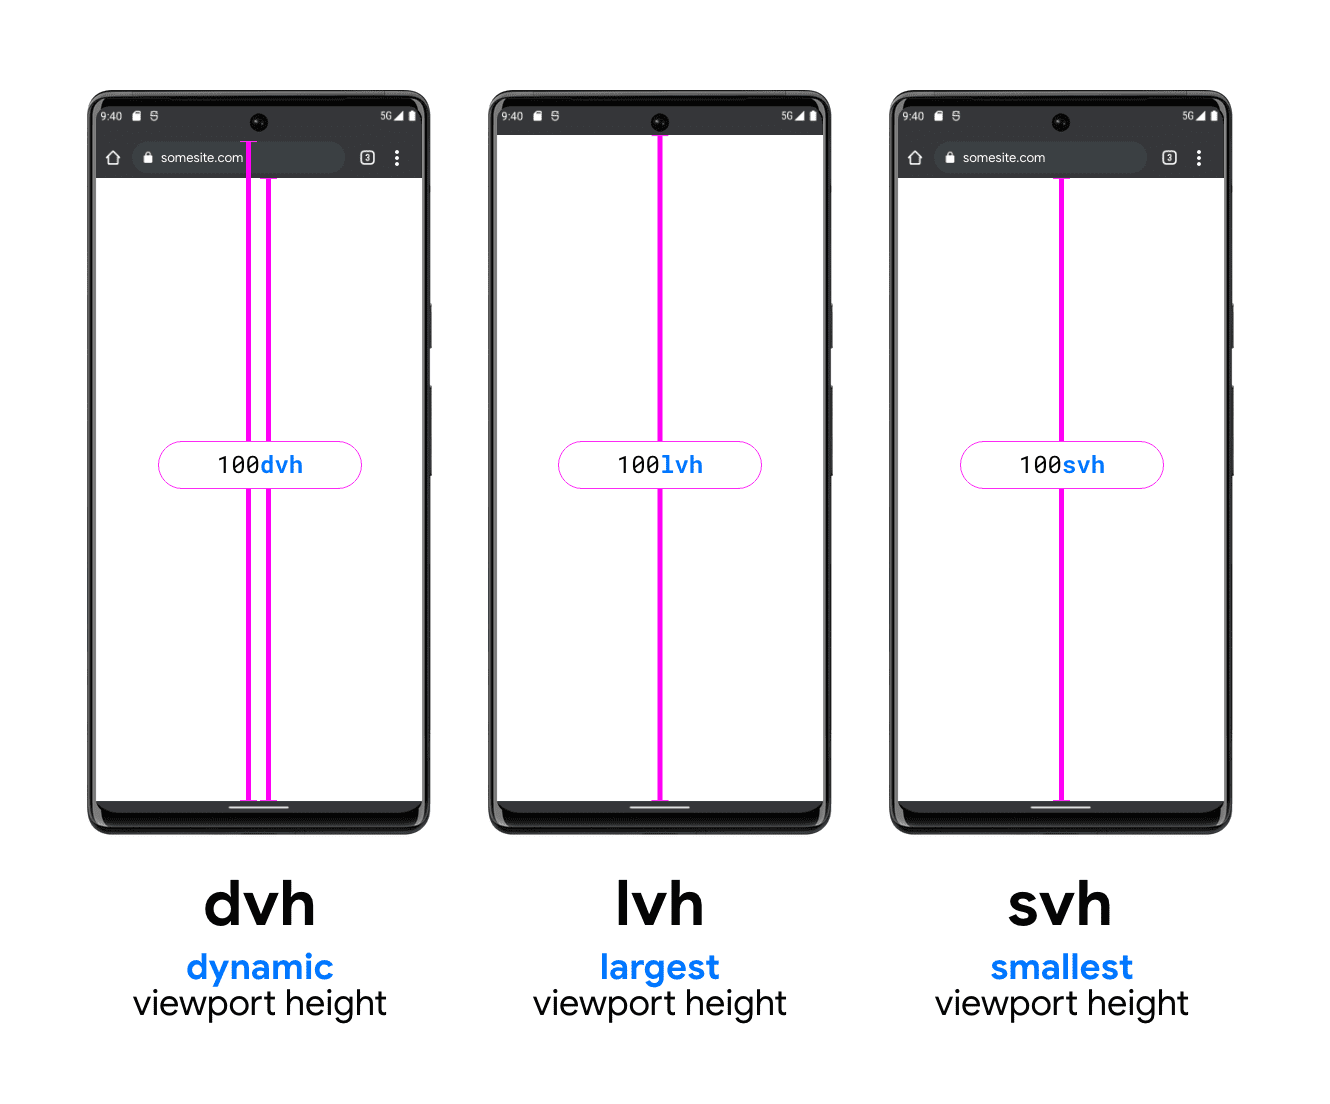 DVH, LVH ve SVH&#39;yi gösteren üç telefon grafiği. DVH örnek telefonda, biri arama çubuğunun alt kısmı ile görüntü alanının alt kısmı arasında, diğeri arama çubuğunun üzerinde (sistem durum çubuğunun altında) ve görüntü alanının alt kısmında olmak üzere iki dikey çizgi bulunur. Bu çizgi, DVH&#39;nin bu iki uzunluktan nasıl olabileceğini gösterir. LVH ortada, cihaz durum çubuğunun alt kısmı ile telefon görüntü alanı düğmesi arasında bir çizgi olacak şekilde gösterilmiştir. Sonuncusu, tarayıcı arama çubuğunun altından görüntü alanının alt kısmına doğru olan bir çizgi gösteren SVH birimi örneğidir.